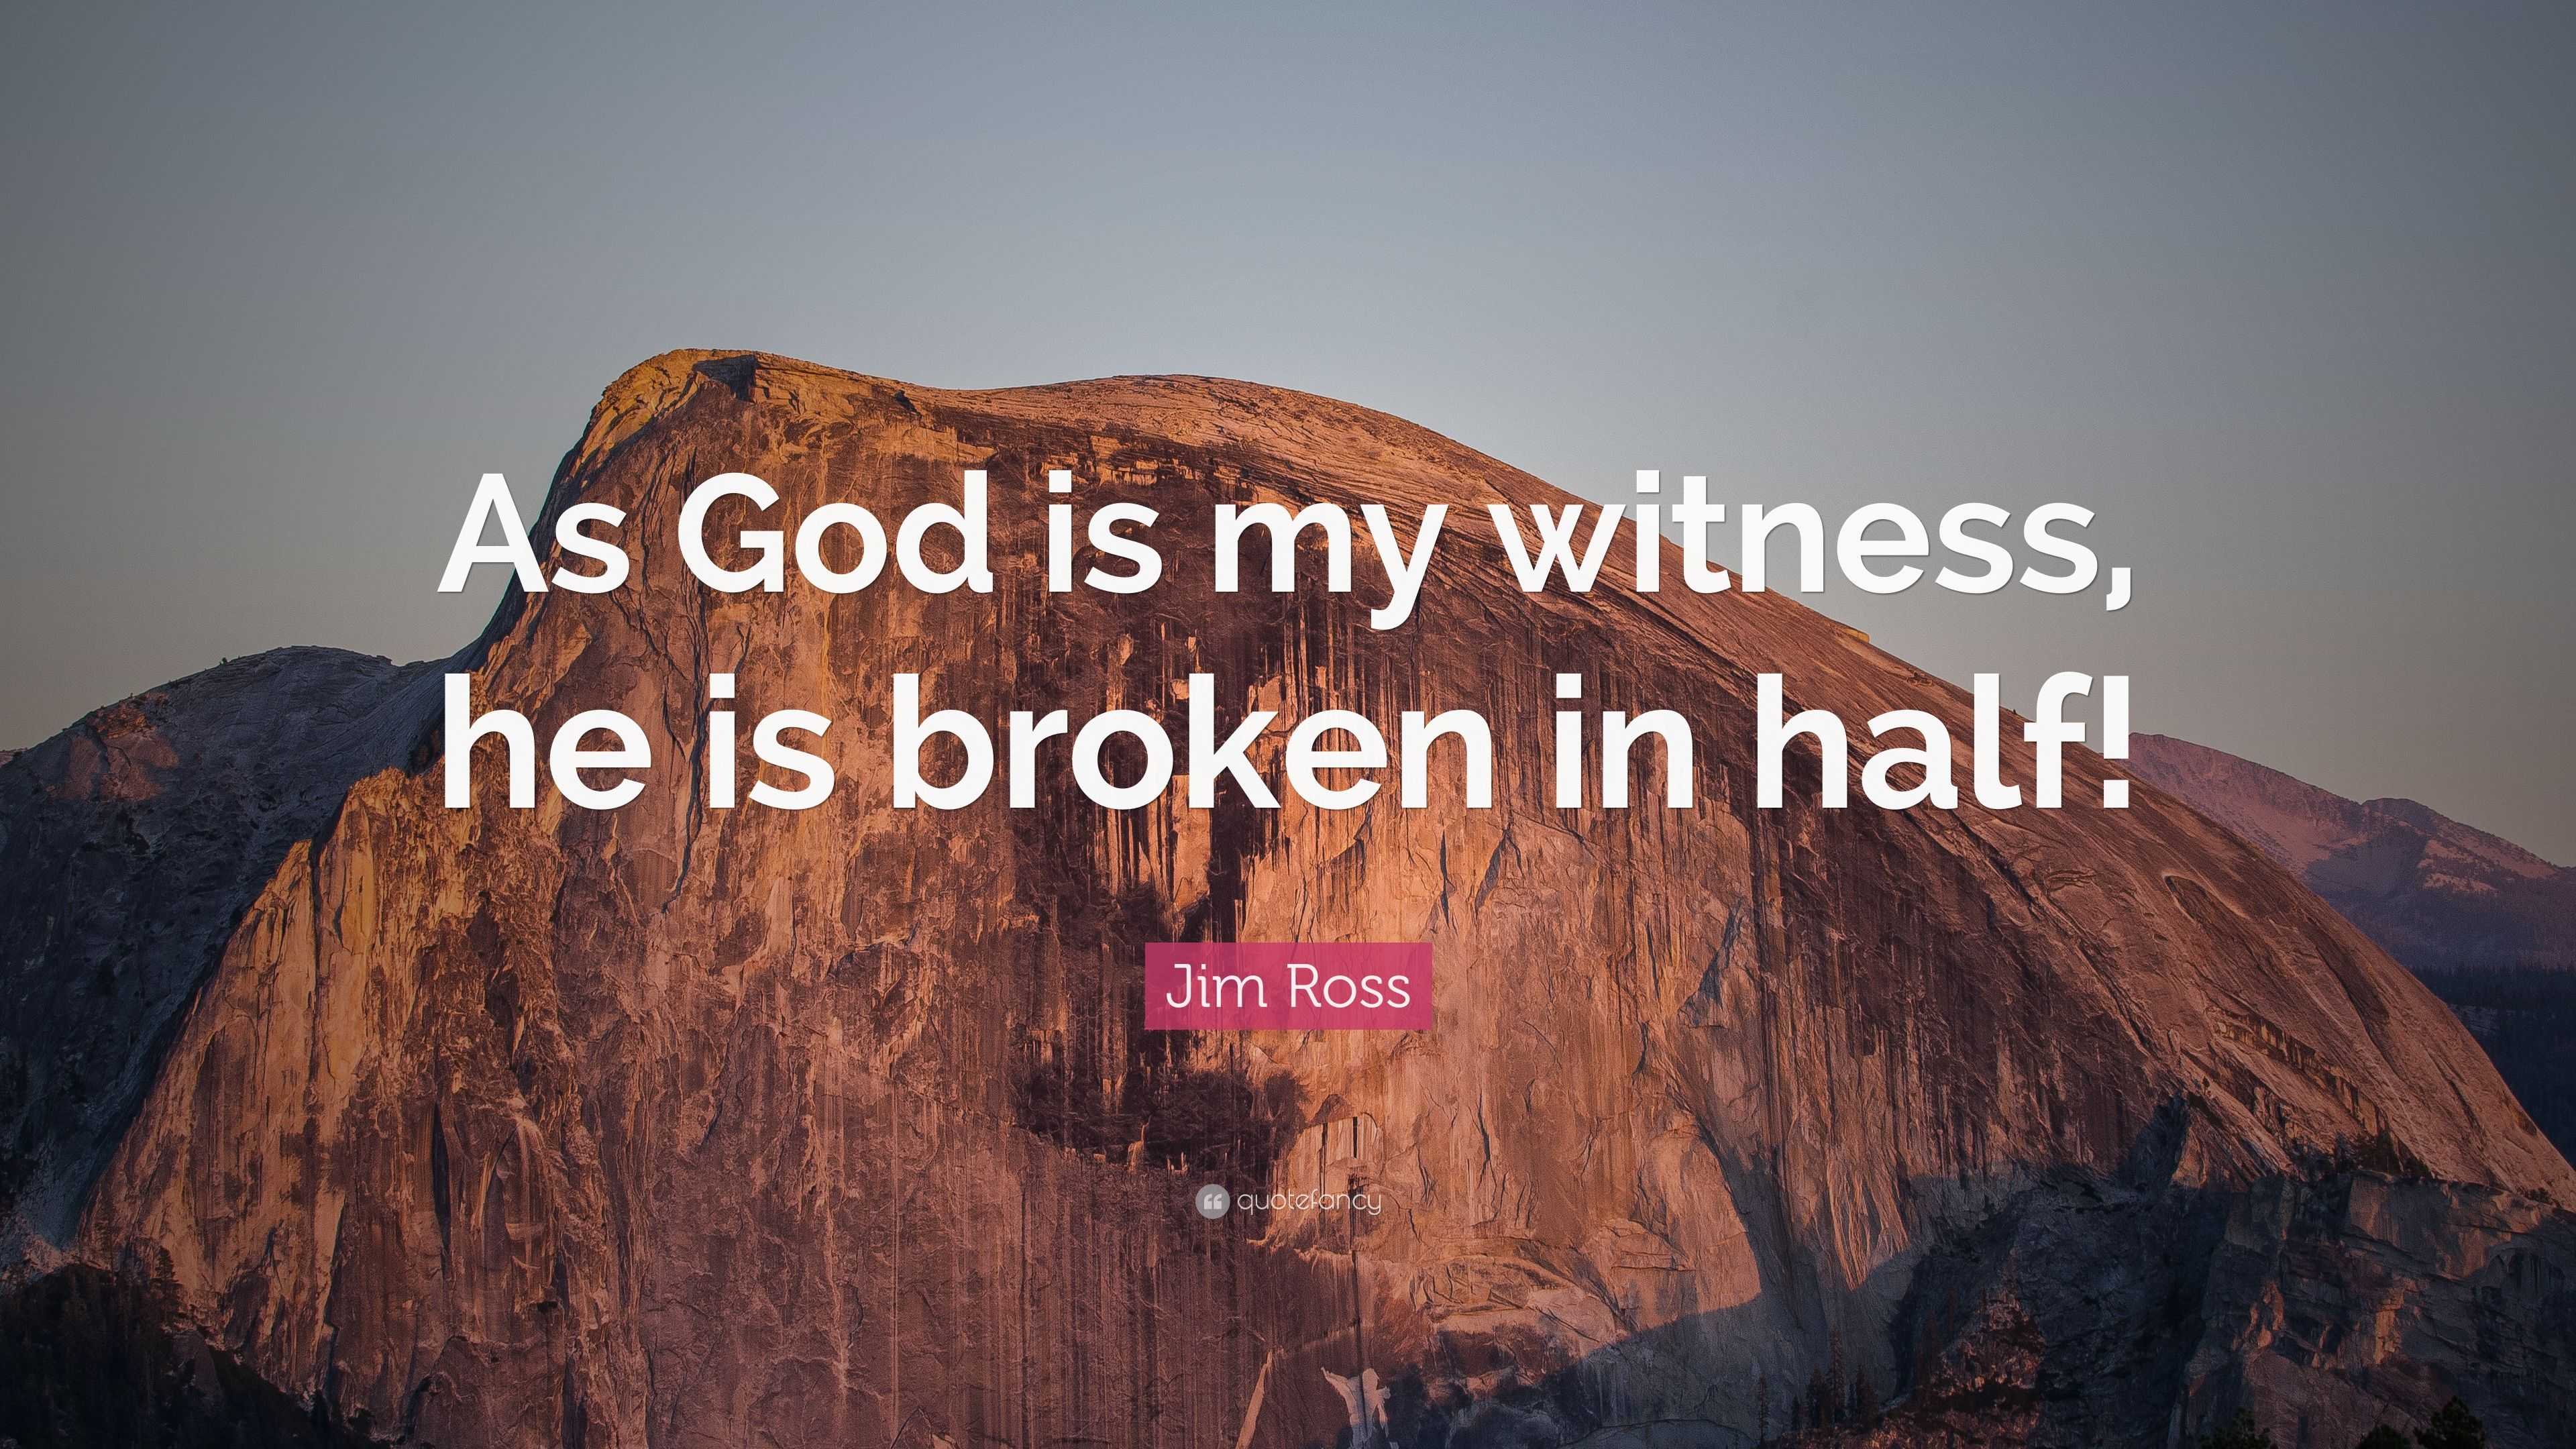 Jim Ross Quote: "As God is my witness, he is broken in half!" (9 wallpapers) - Quotefancy